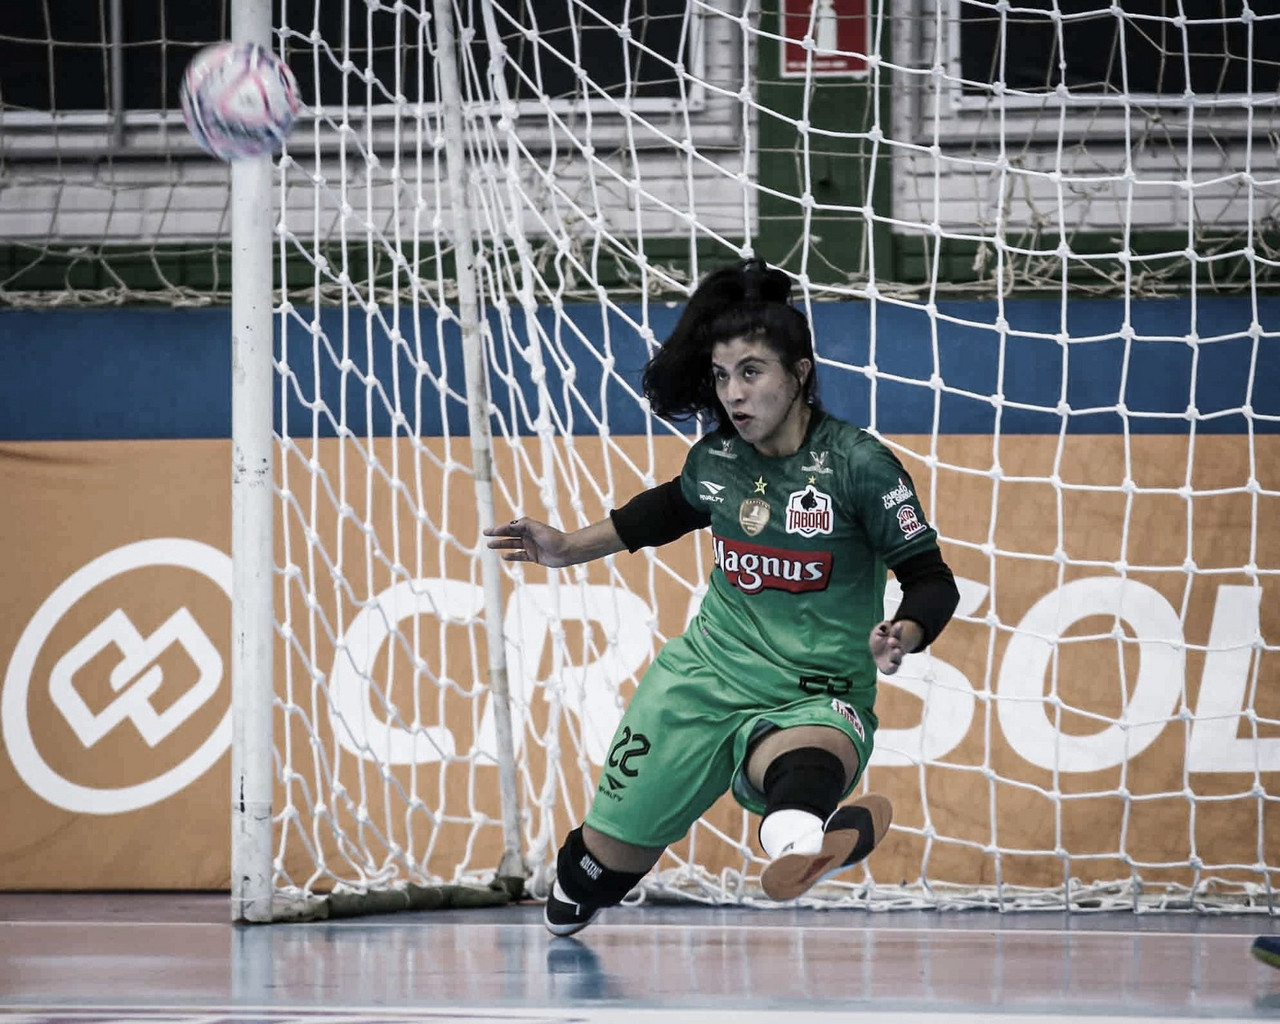 Goleira Flaviani realça participação na Copa Mundo de Futsal: "Belo desafio"